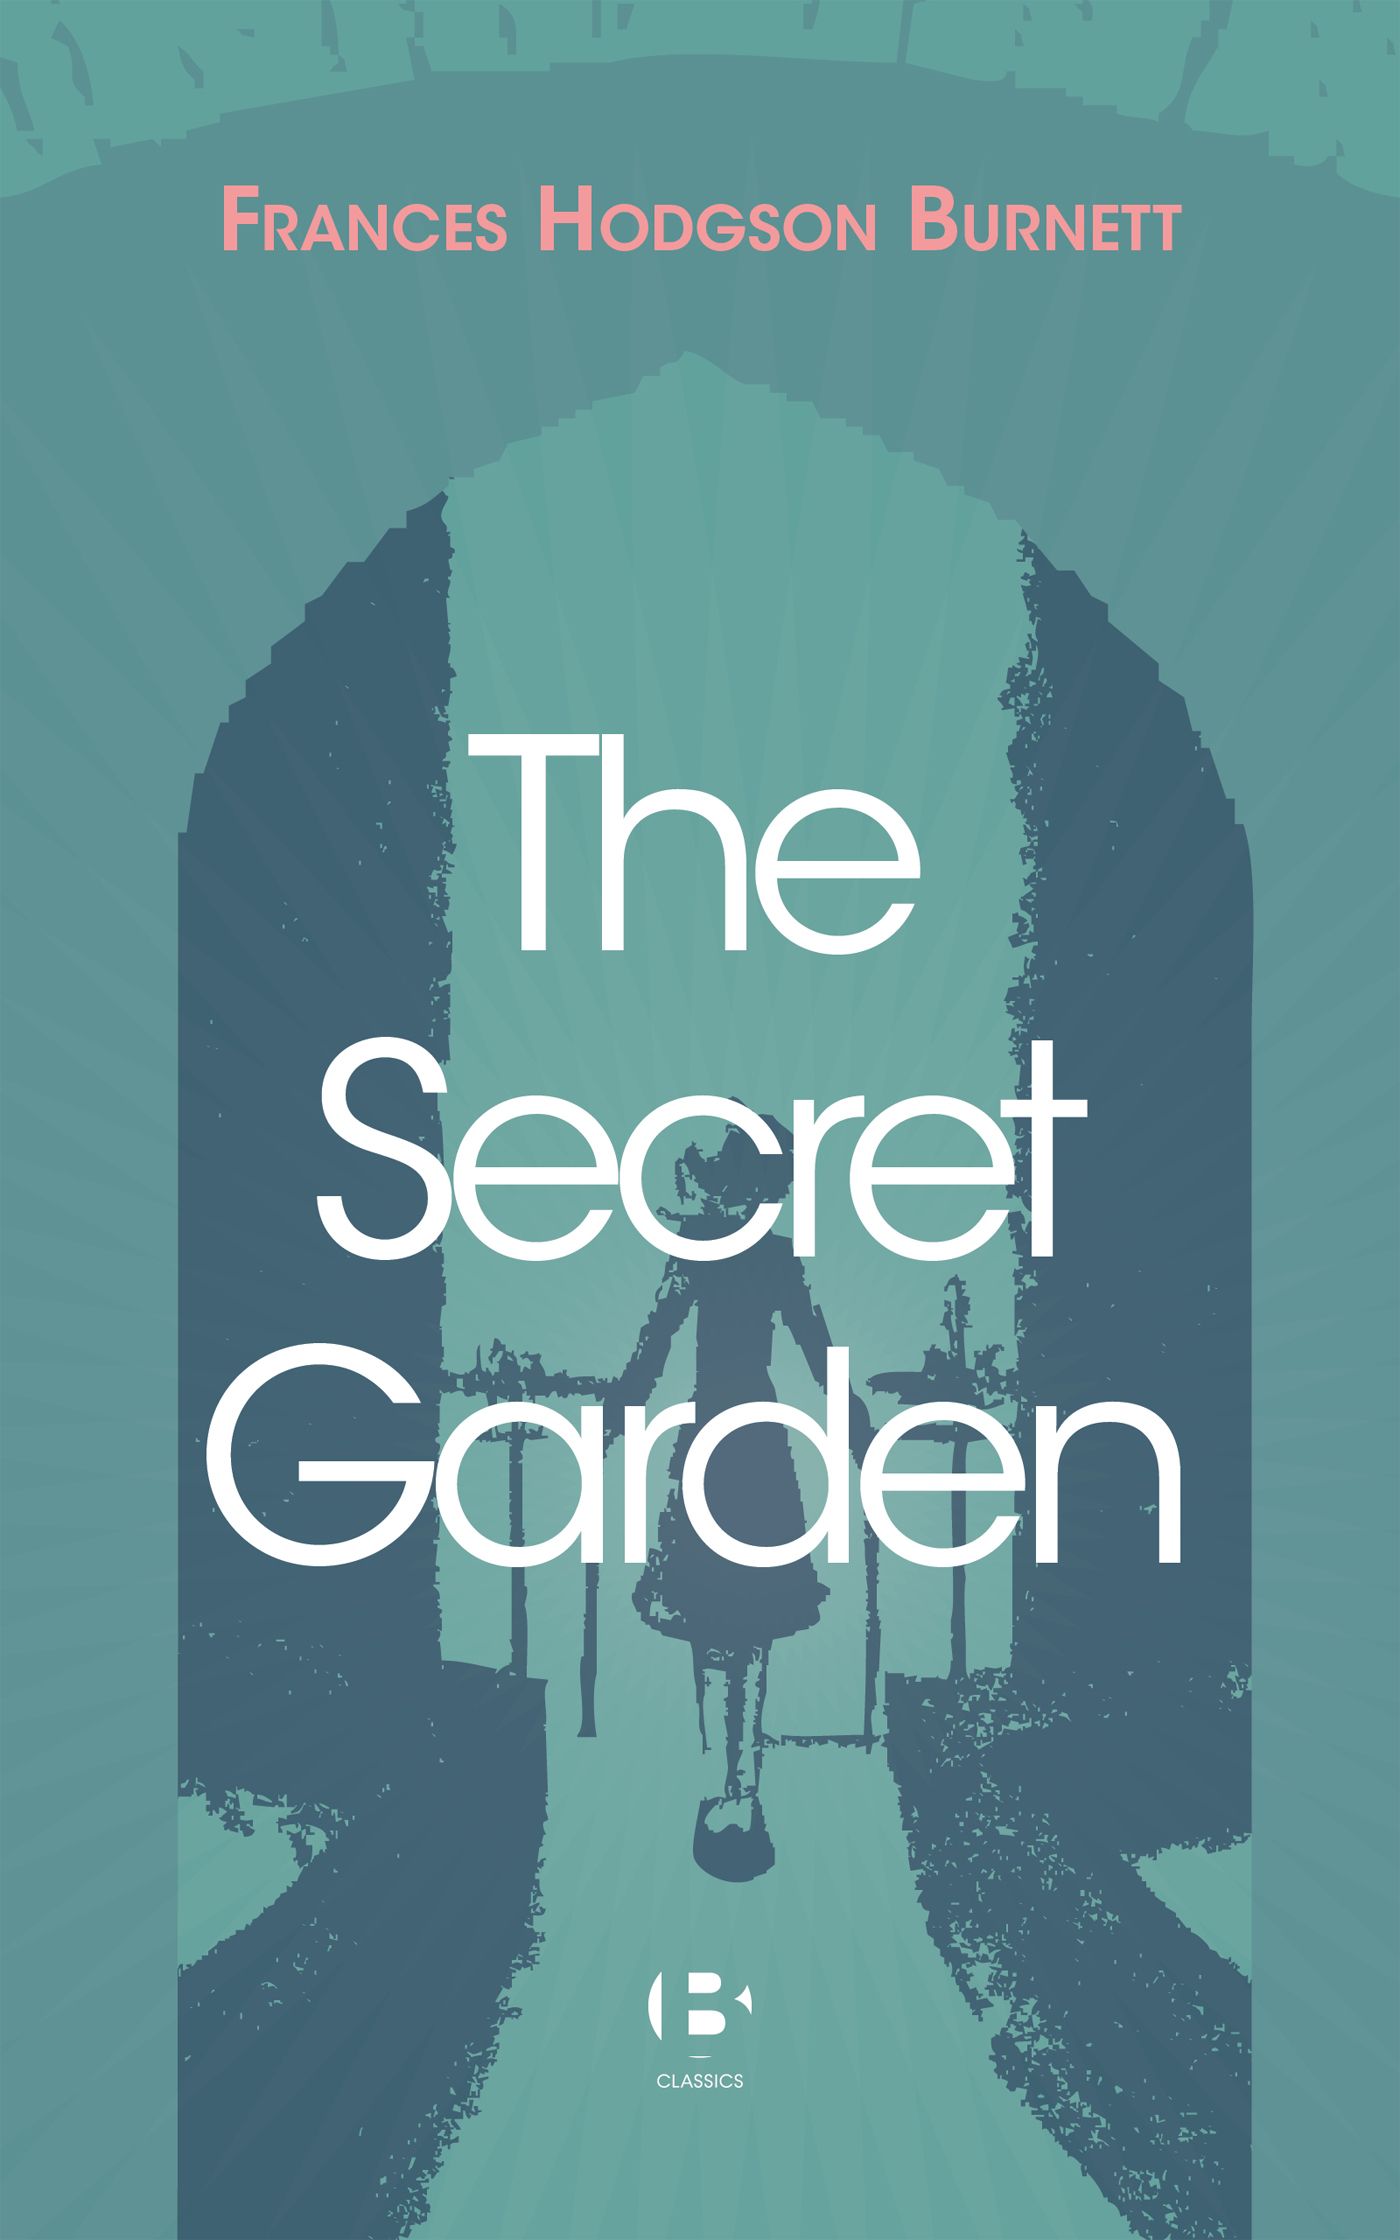 The Secret Garden, eBook by Frances Hodgson Burnett